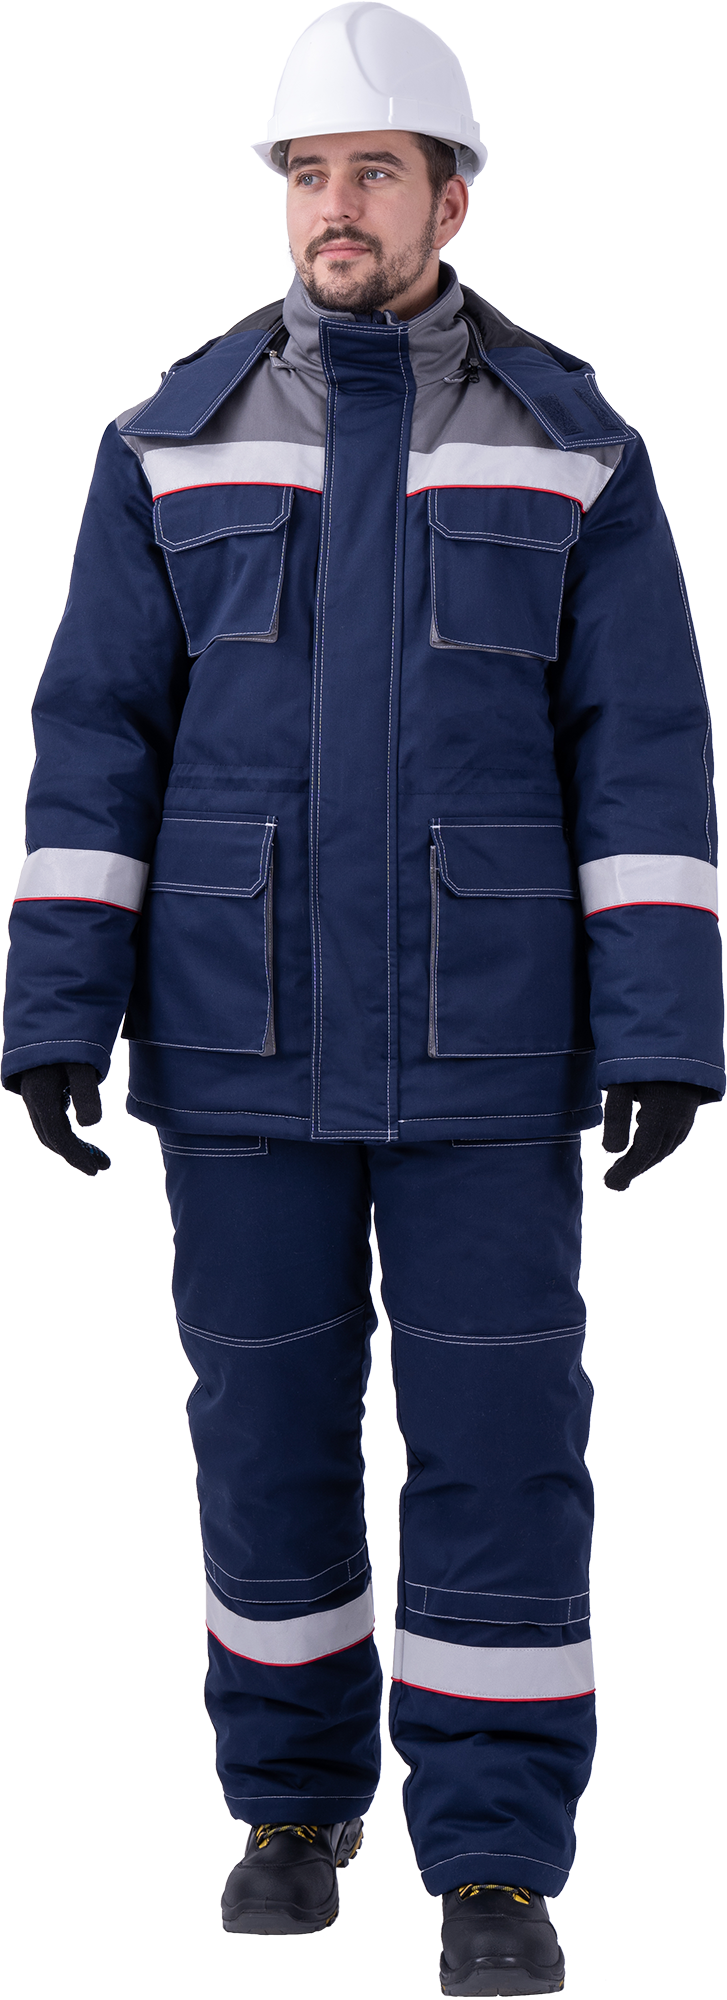 Костюм мужской НАДЫМ от пониженных температур воздуха и ветра, механических воздействий и ОПЗ (куртка, полукомбинезон), темно-синий/серый